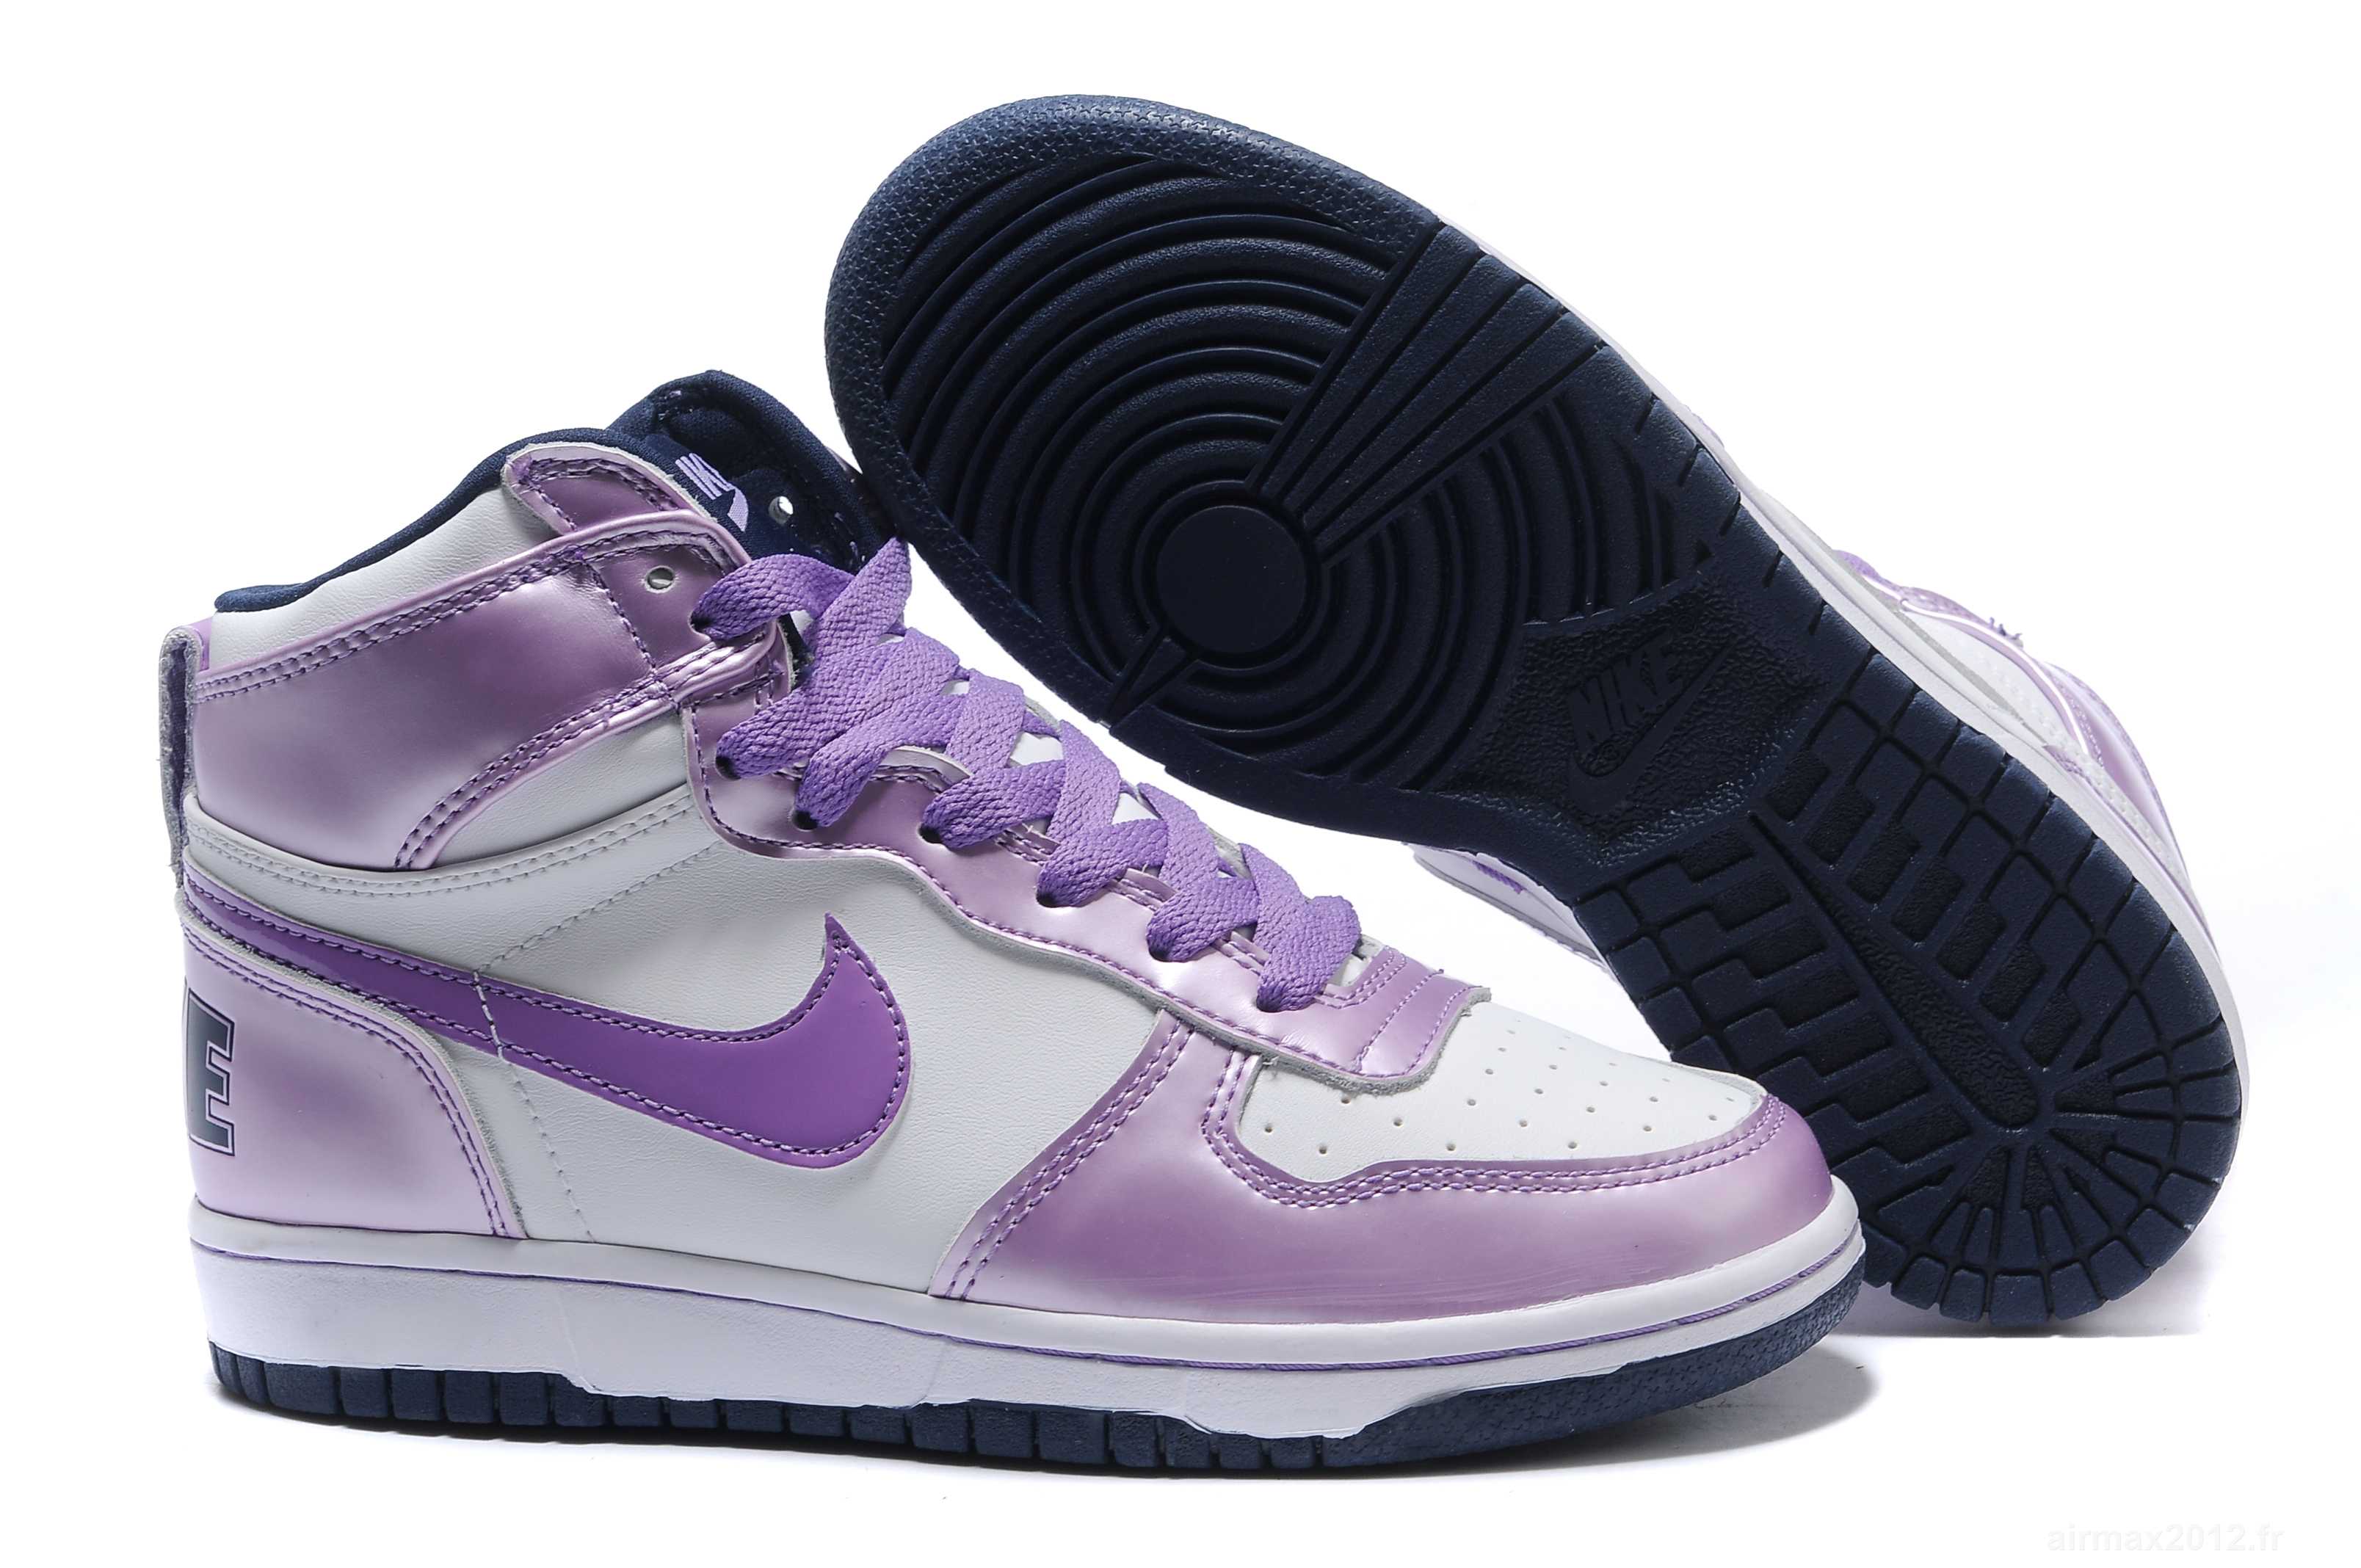 nike sb dunk high femme violet buy clothes shoes online